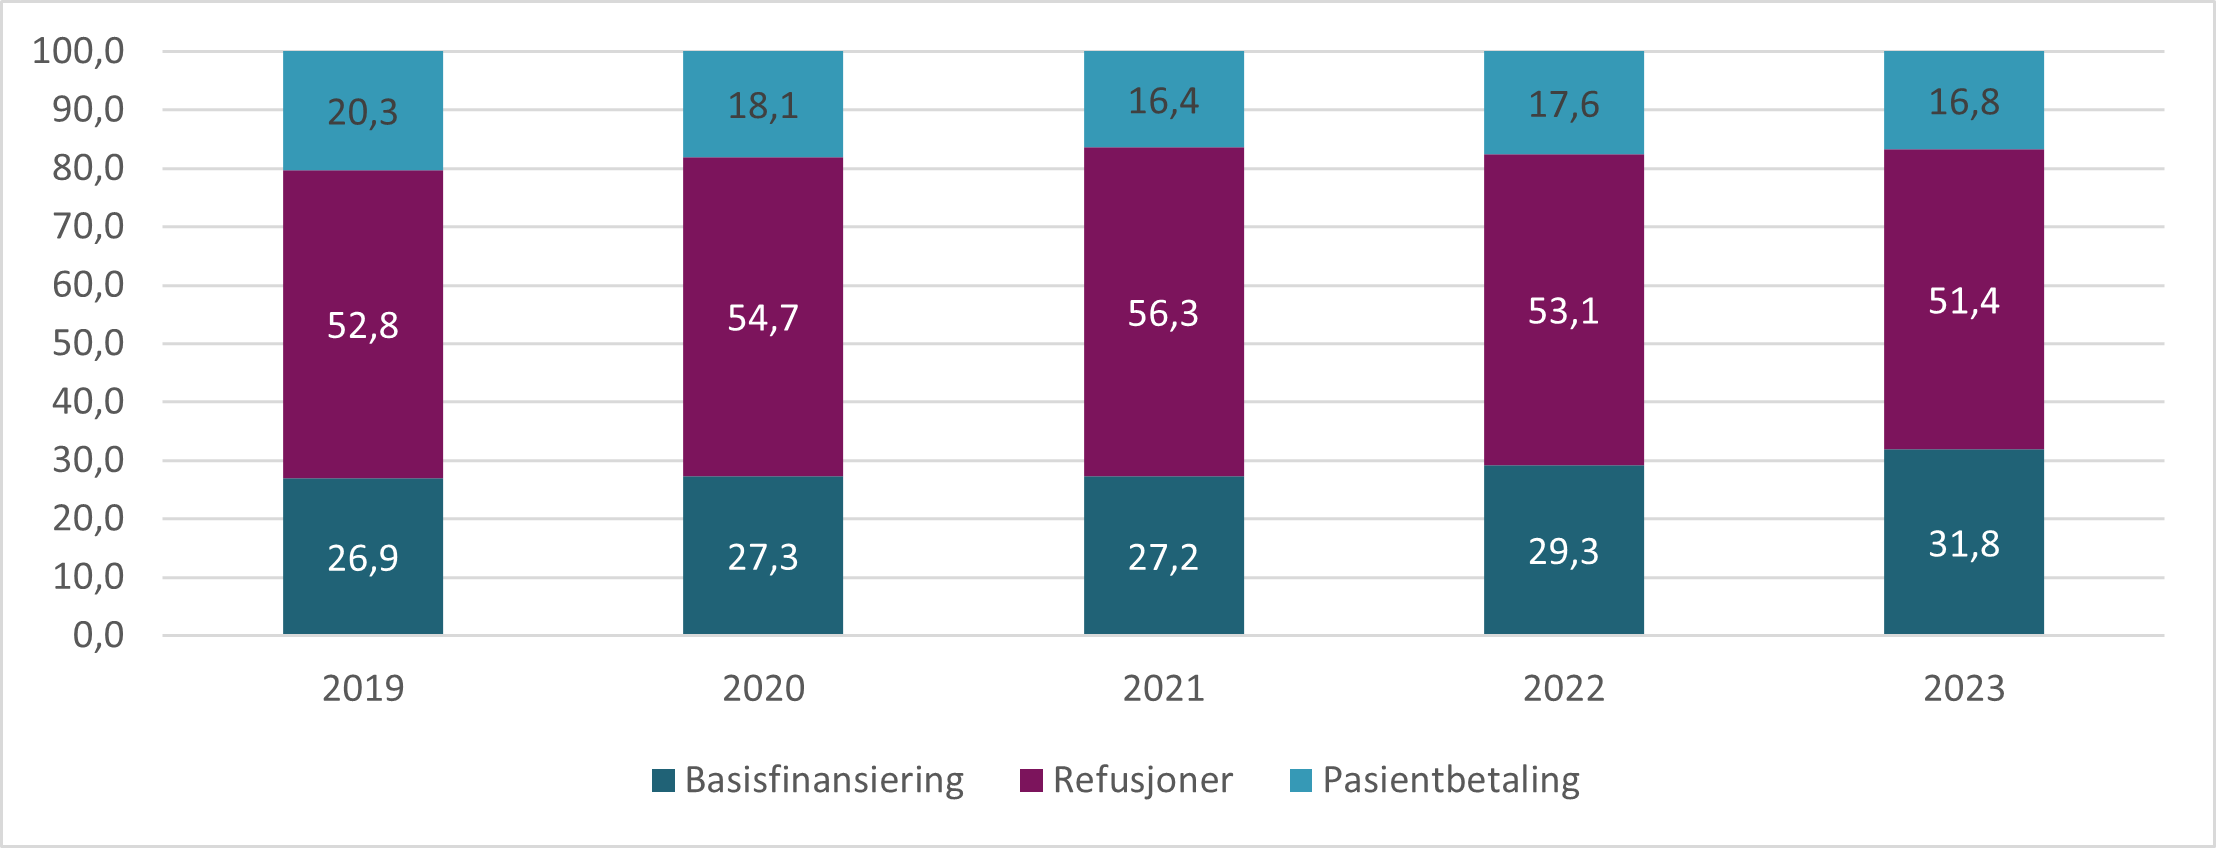 Basisfinansiering, refusjoner og pasientbetaling som prosentvis andel av totale utgifter for fastlegeordningen. 2019 - 2023. Kilde: FLO og KUHR.